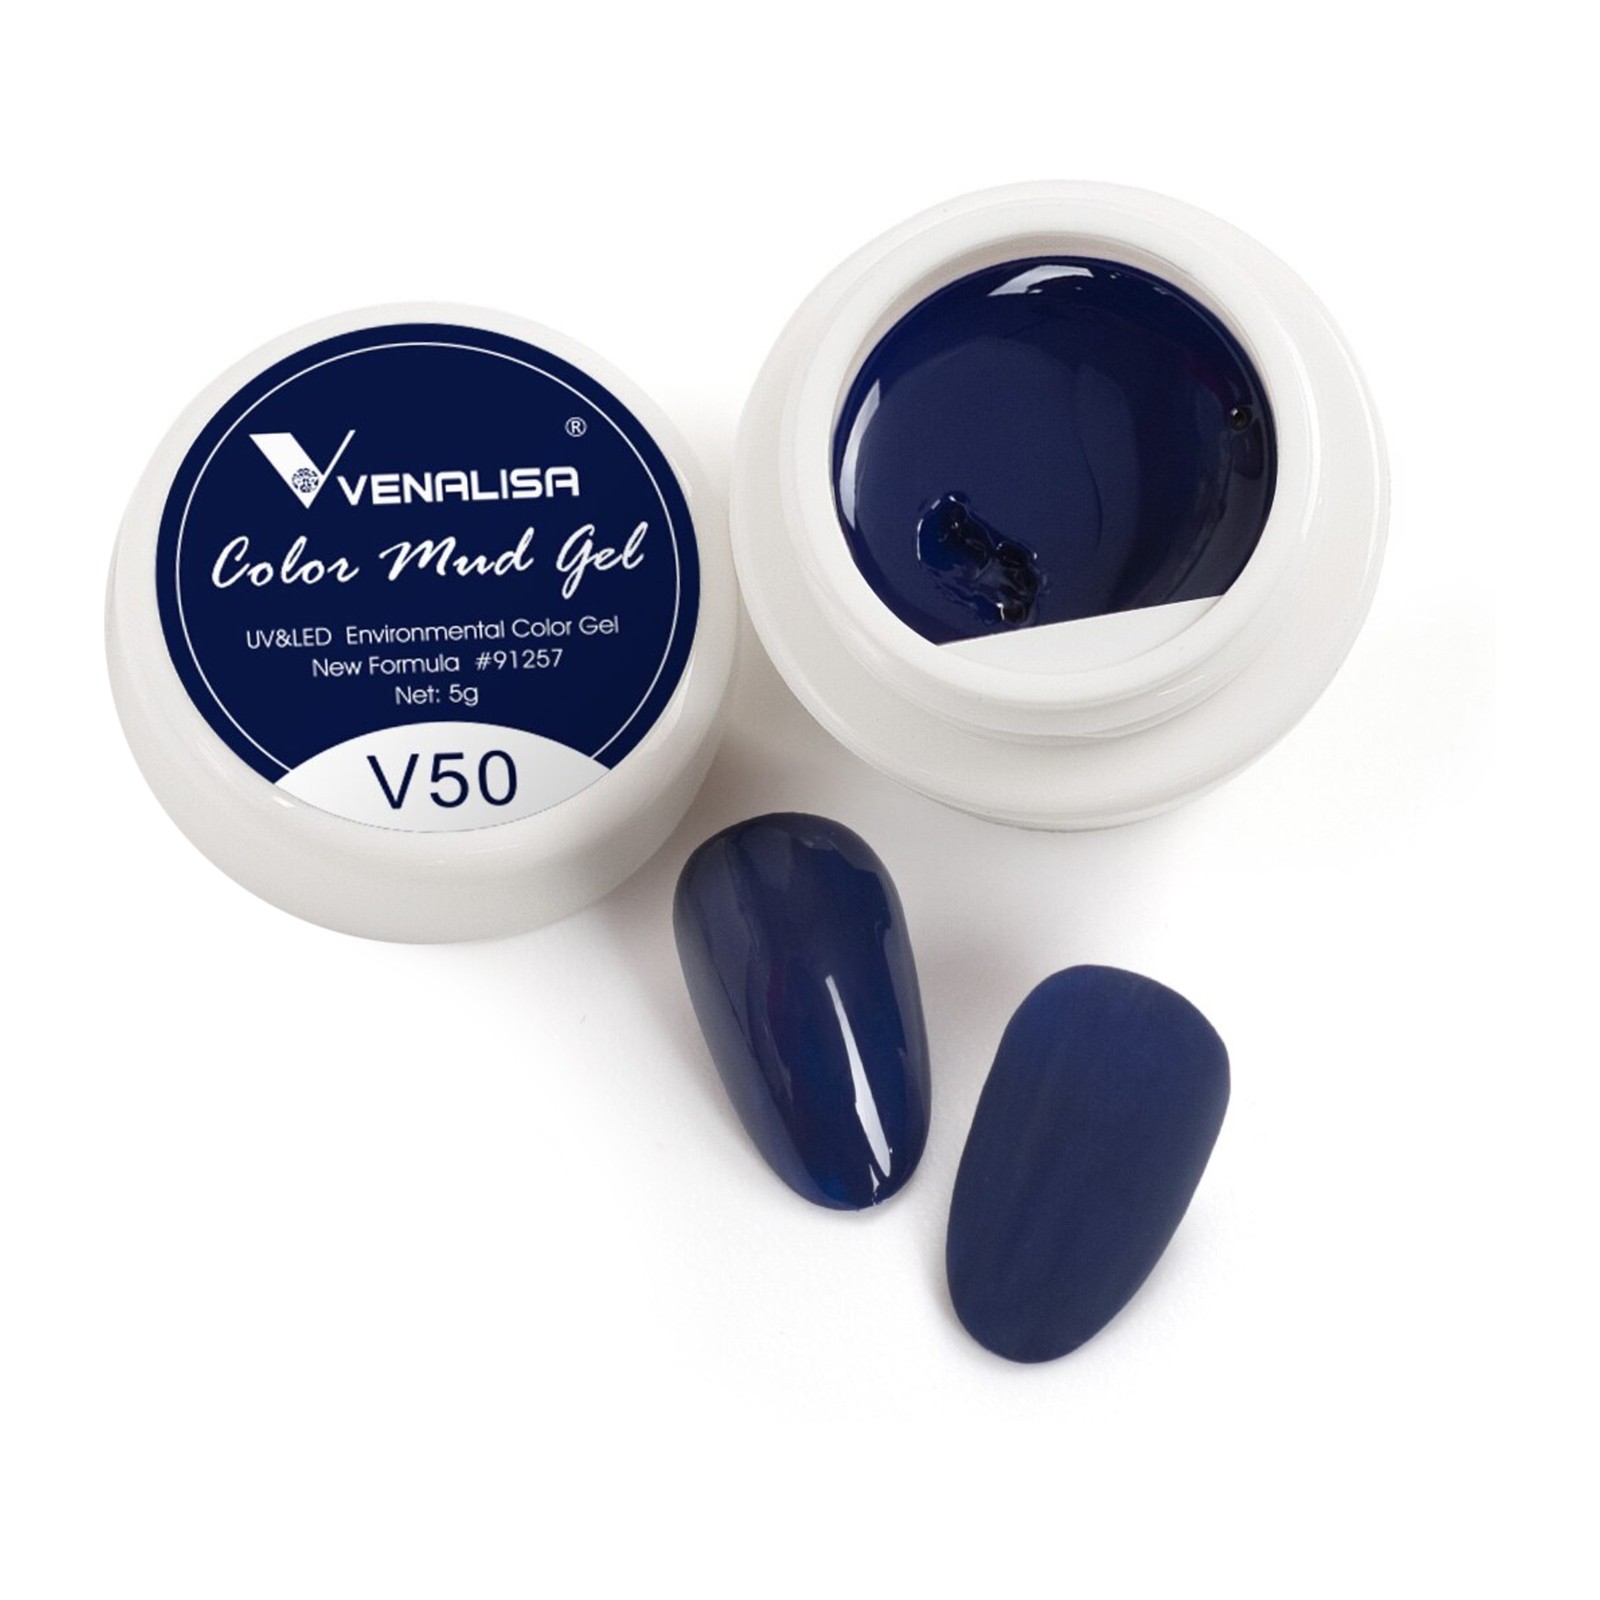 Βεναλίσα -  V50 -  5 ml